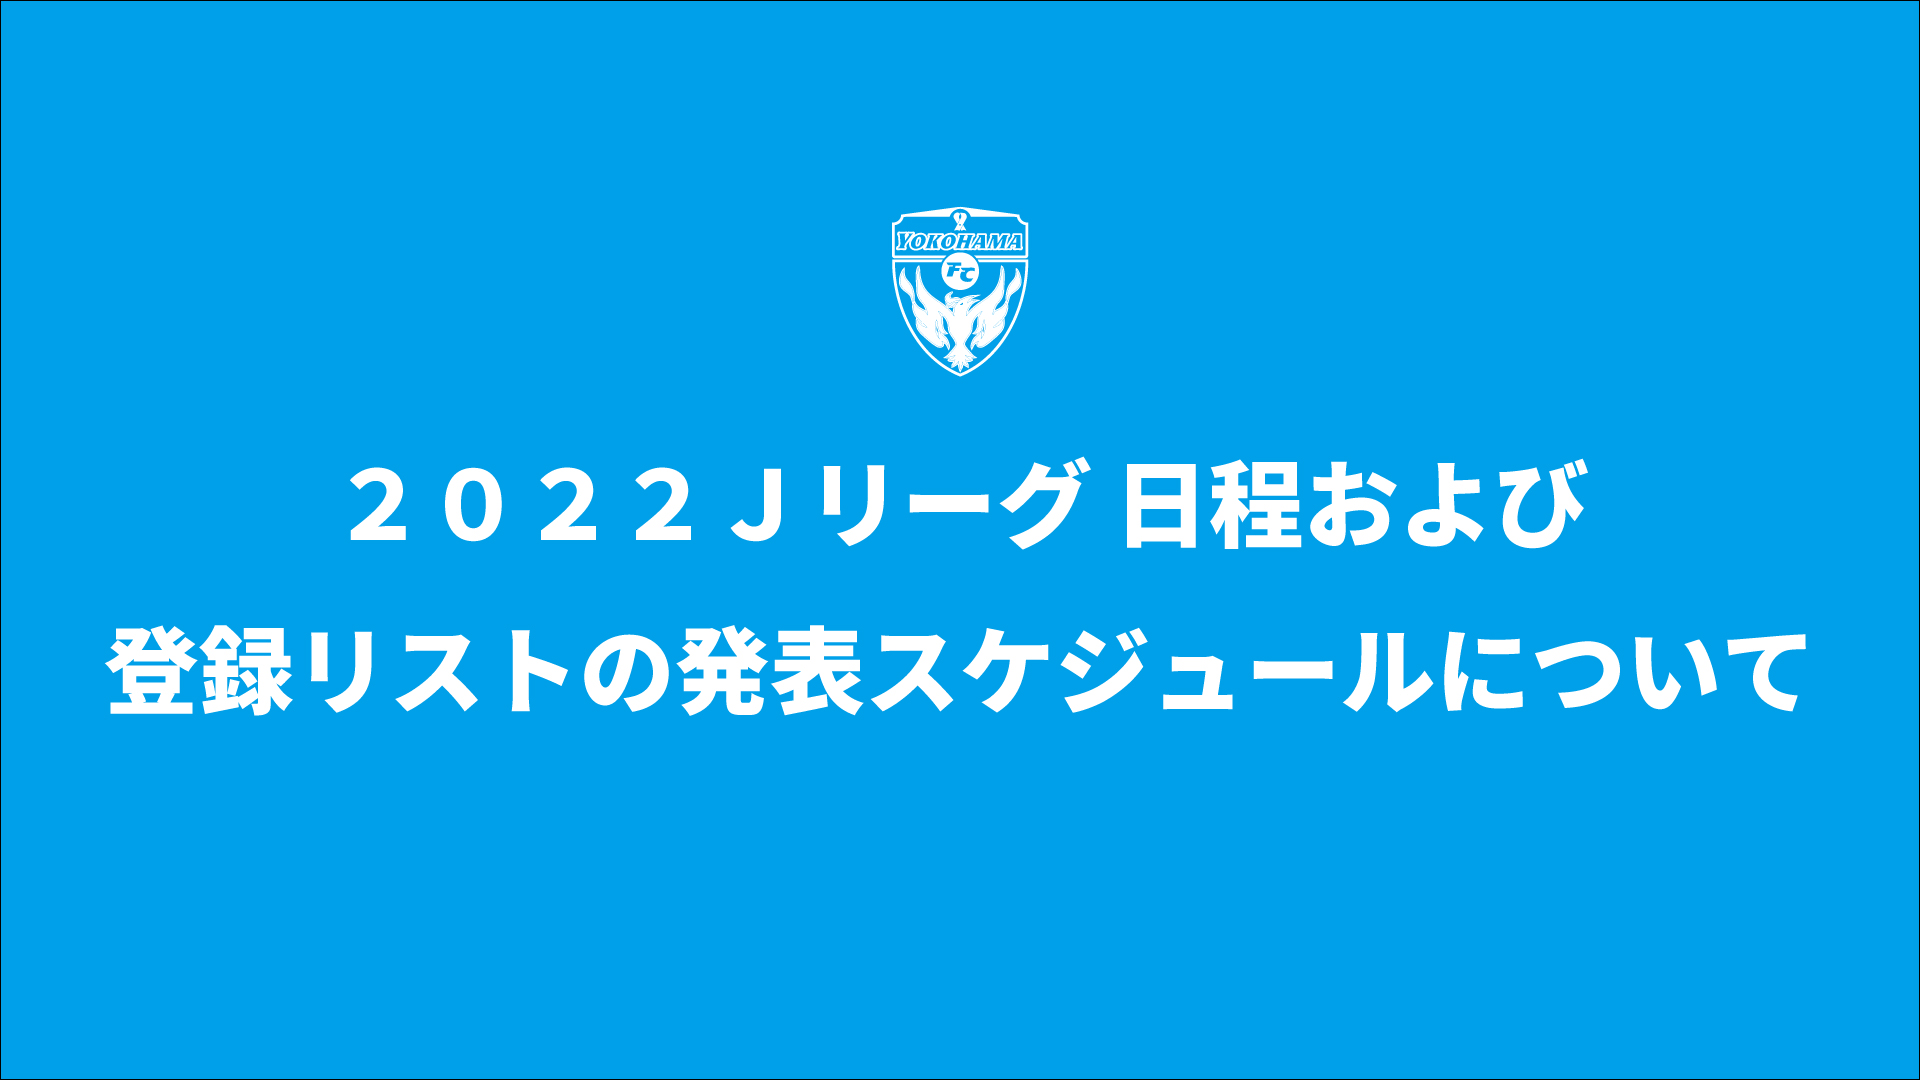 ２０２２ｊリーグ 日程および登録リストの発表スケジュールについて 横浜fcオフィシャルウェブサイト